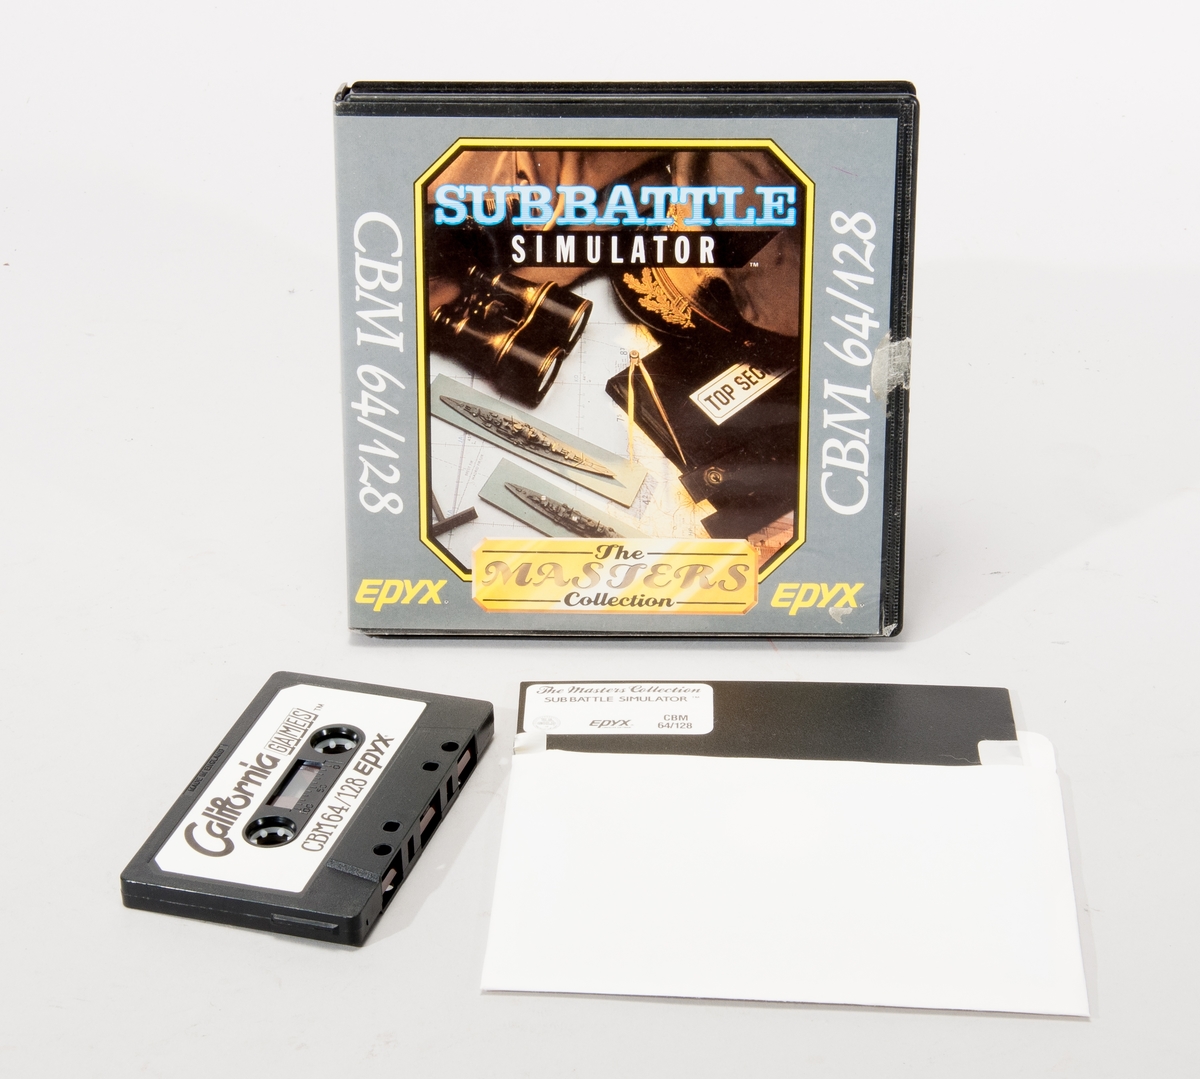 Datorspel för Commodore 64. Ubåtssimulator på en floppydisk och en kassett, i box av plast.